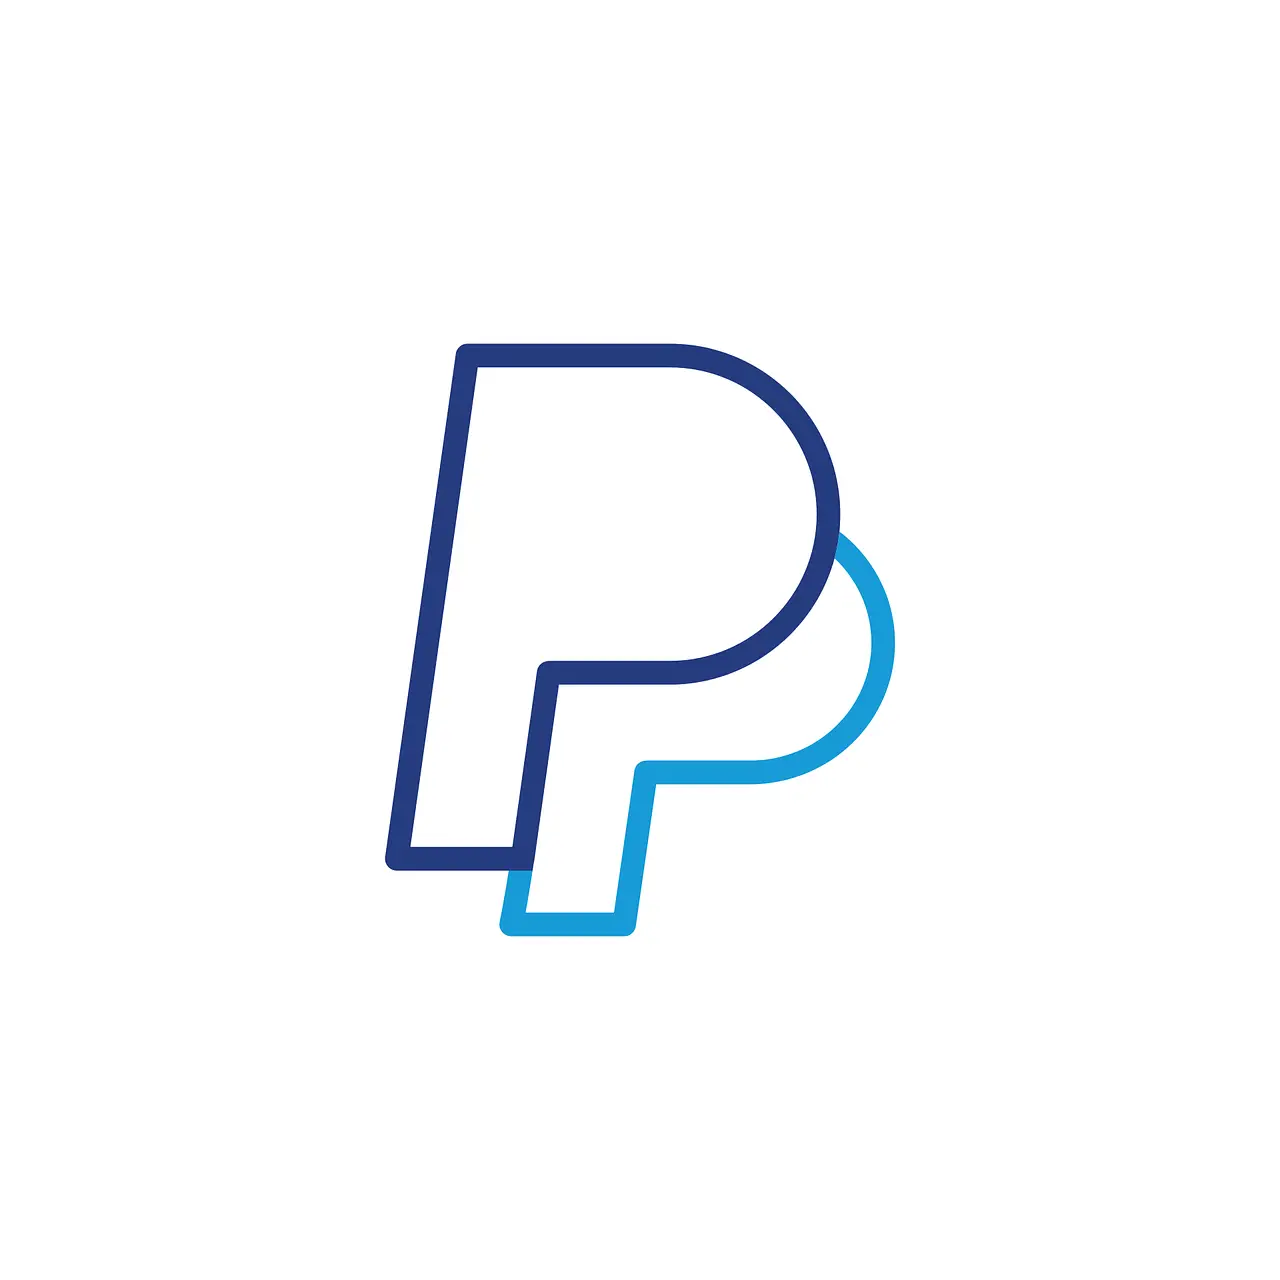 PayPal gratis por valor de $500: ¿estafa o real? - Lo que deberías saber